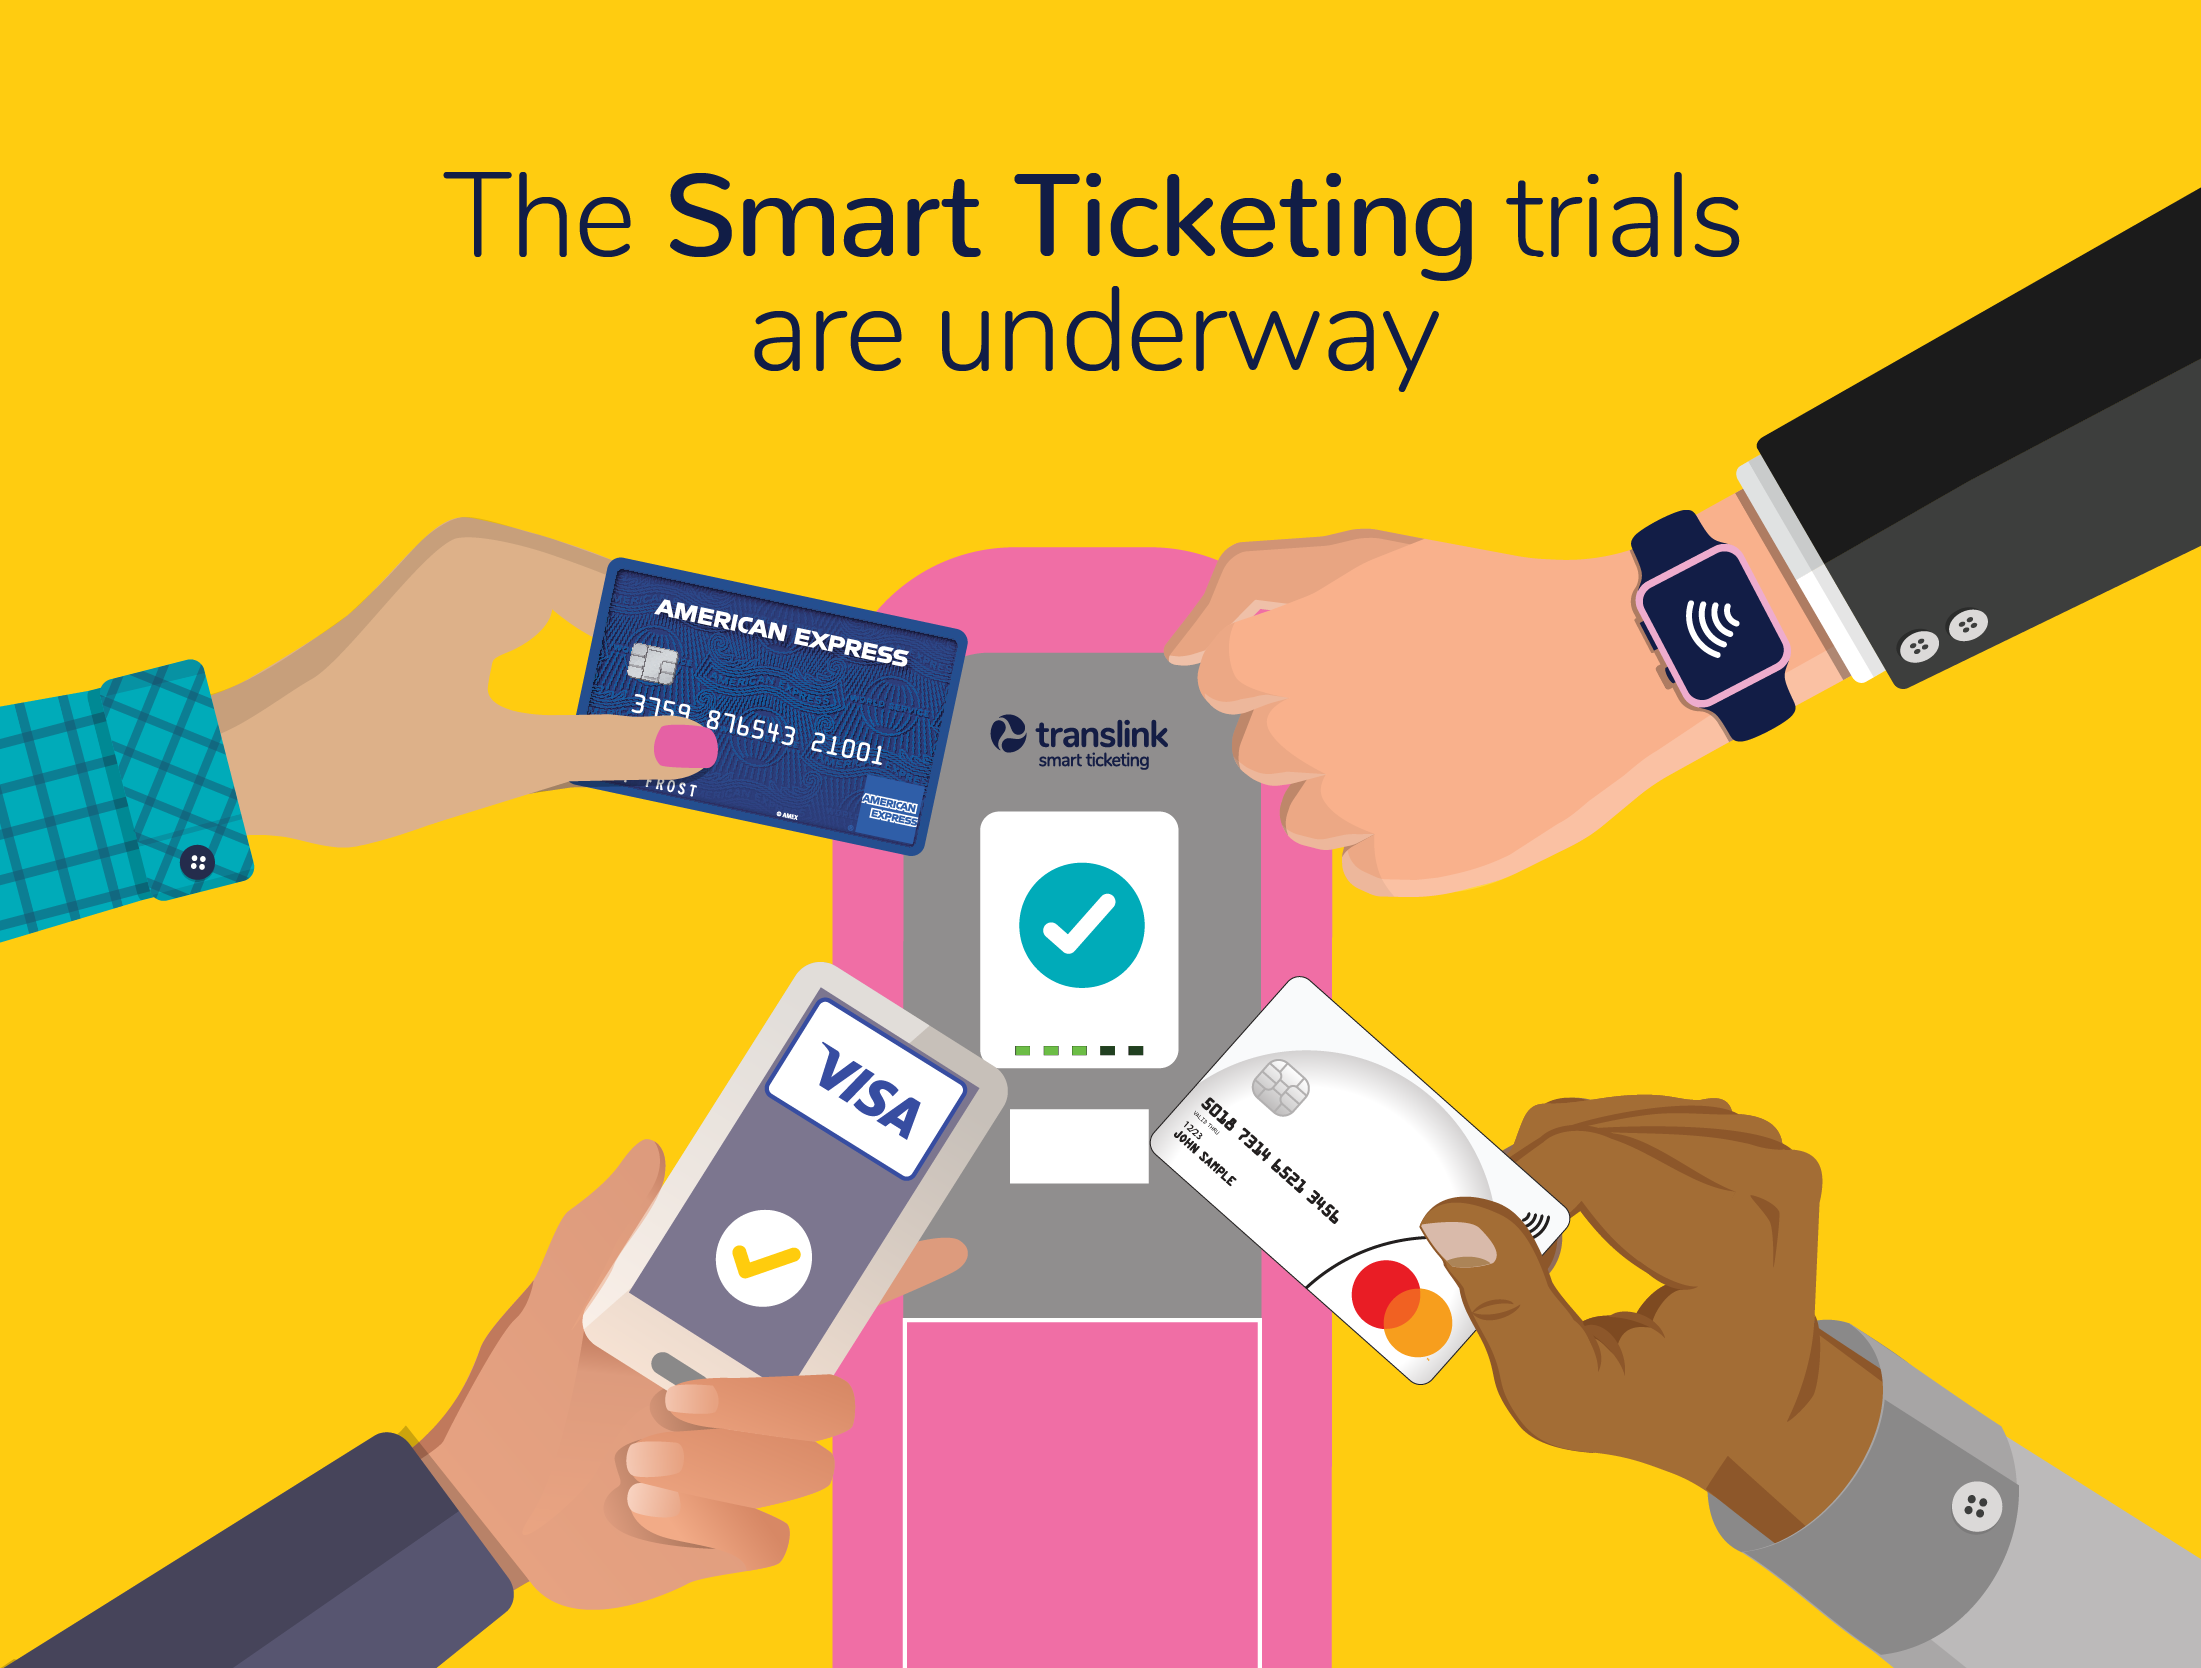 The smart ticketing trials are underway